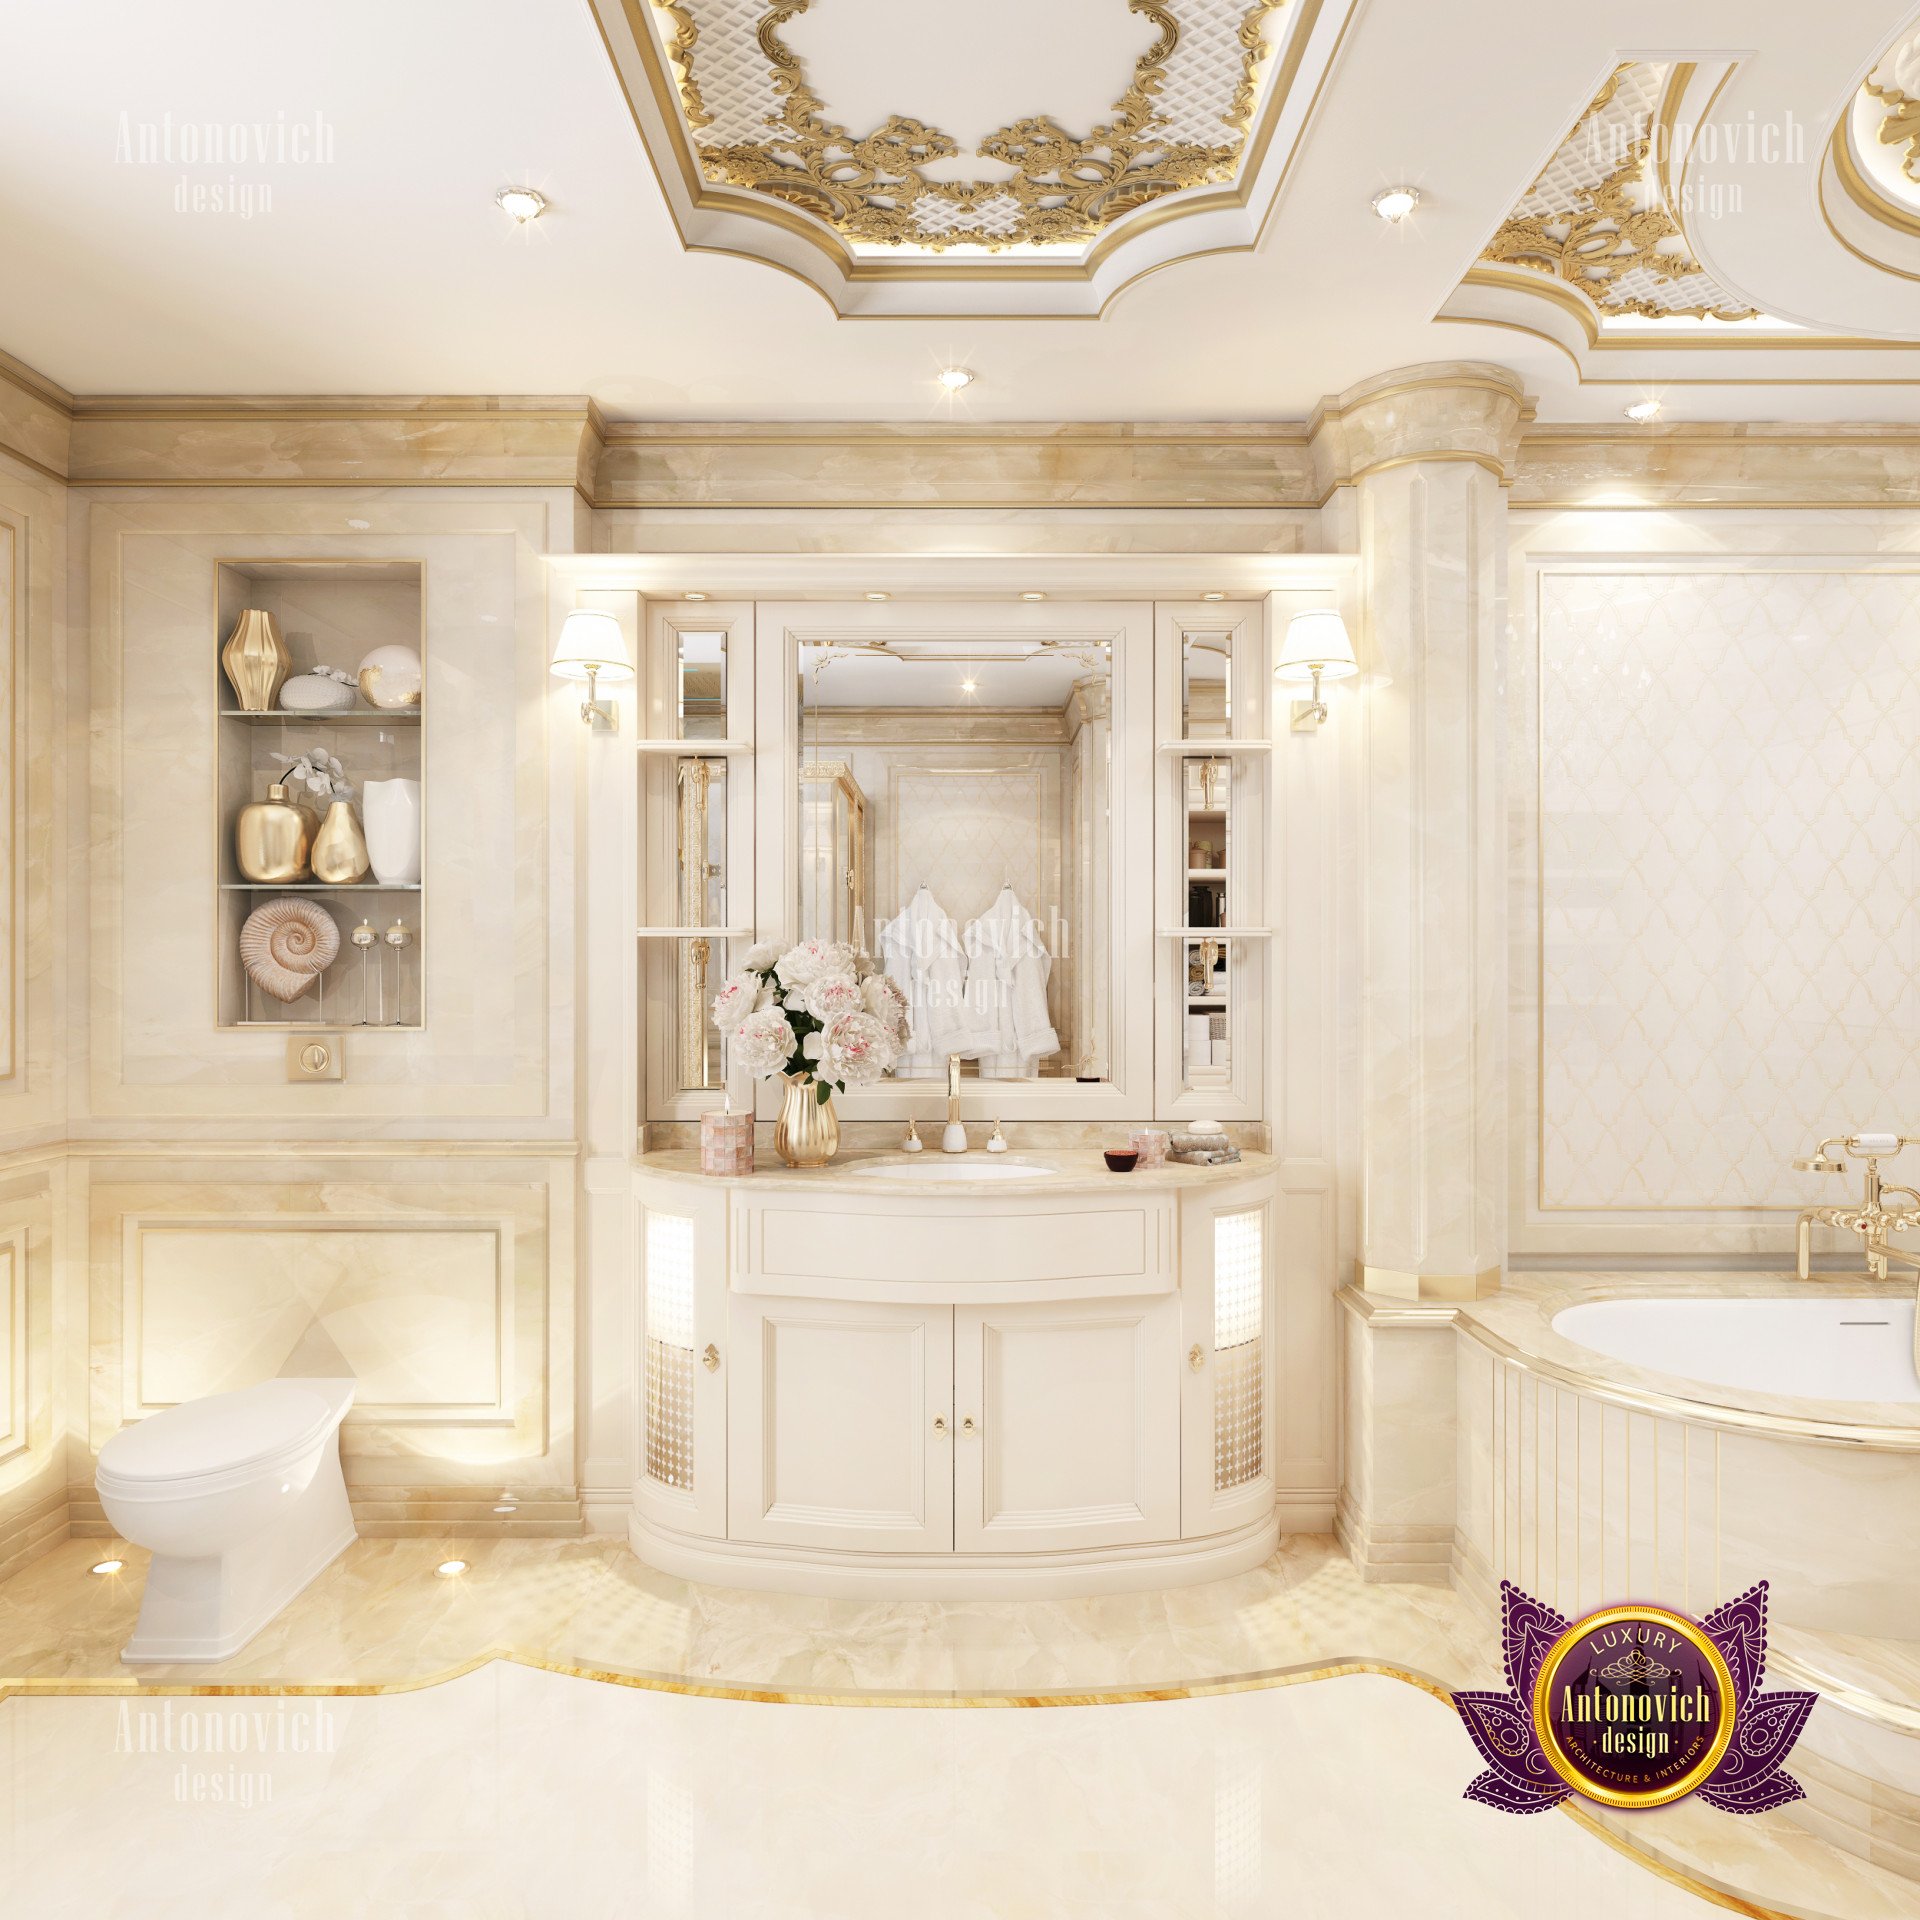 New classic bathroom interior - luxury interior design ...